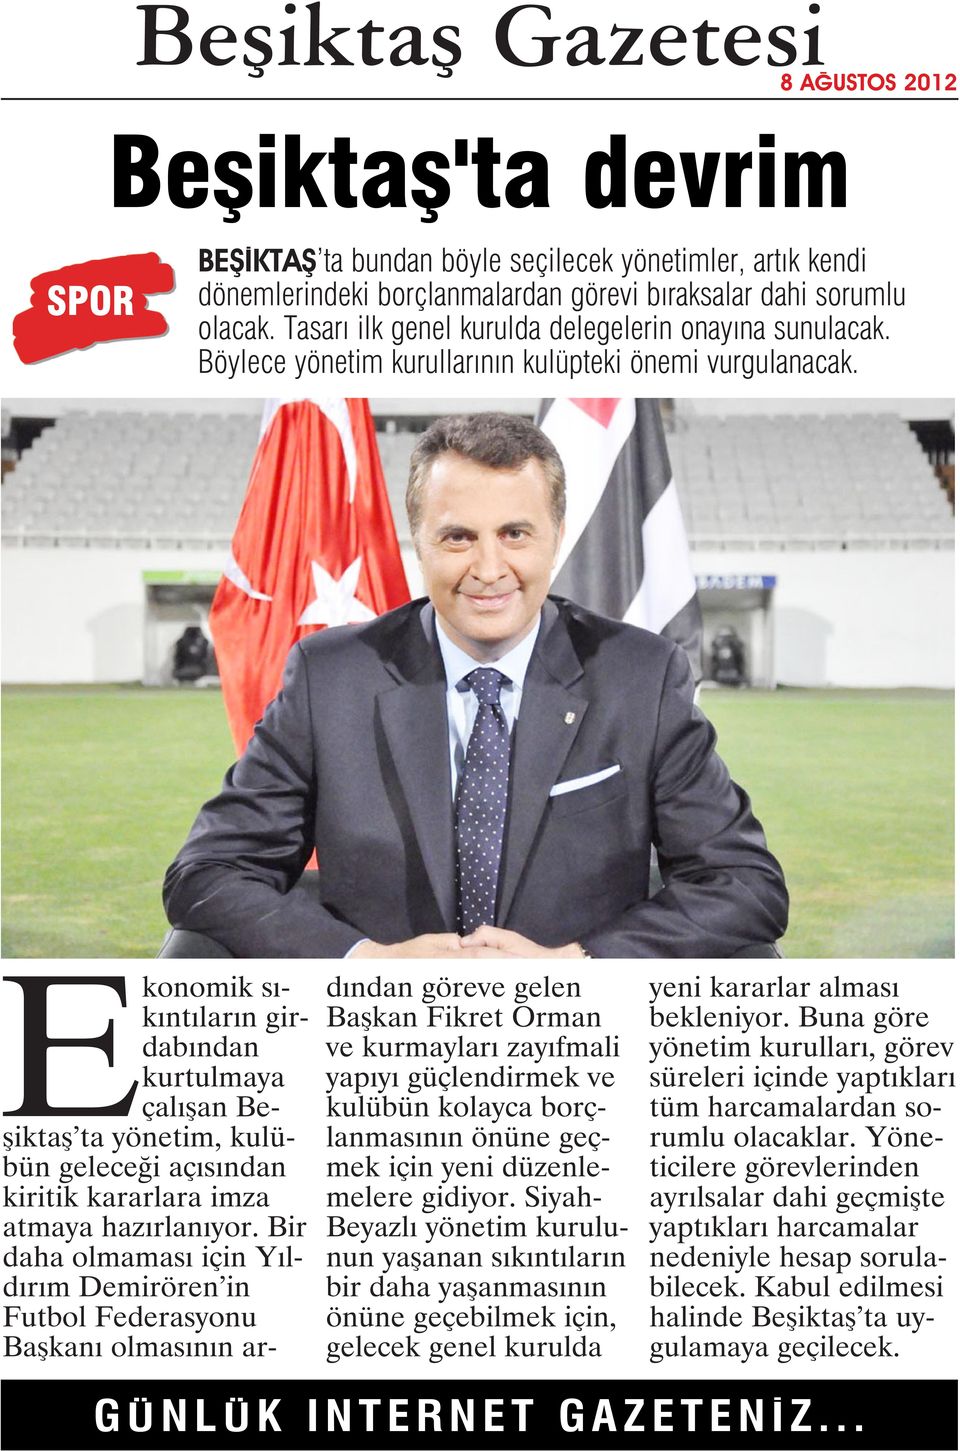 Ekonomik sıkıntıların girdabından kurtulmaya çalışan Beşiktaş ta yönetim, kulübün geleceği açısından kiritik kararlara imza atmaya hazırlanıyor.